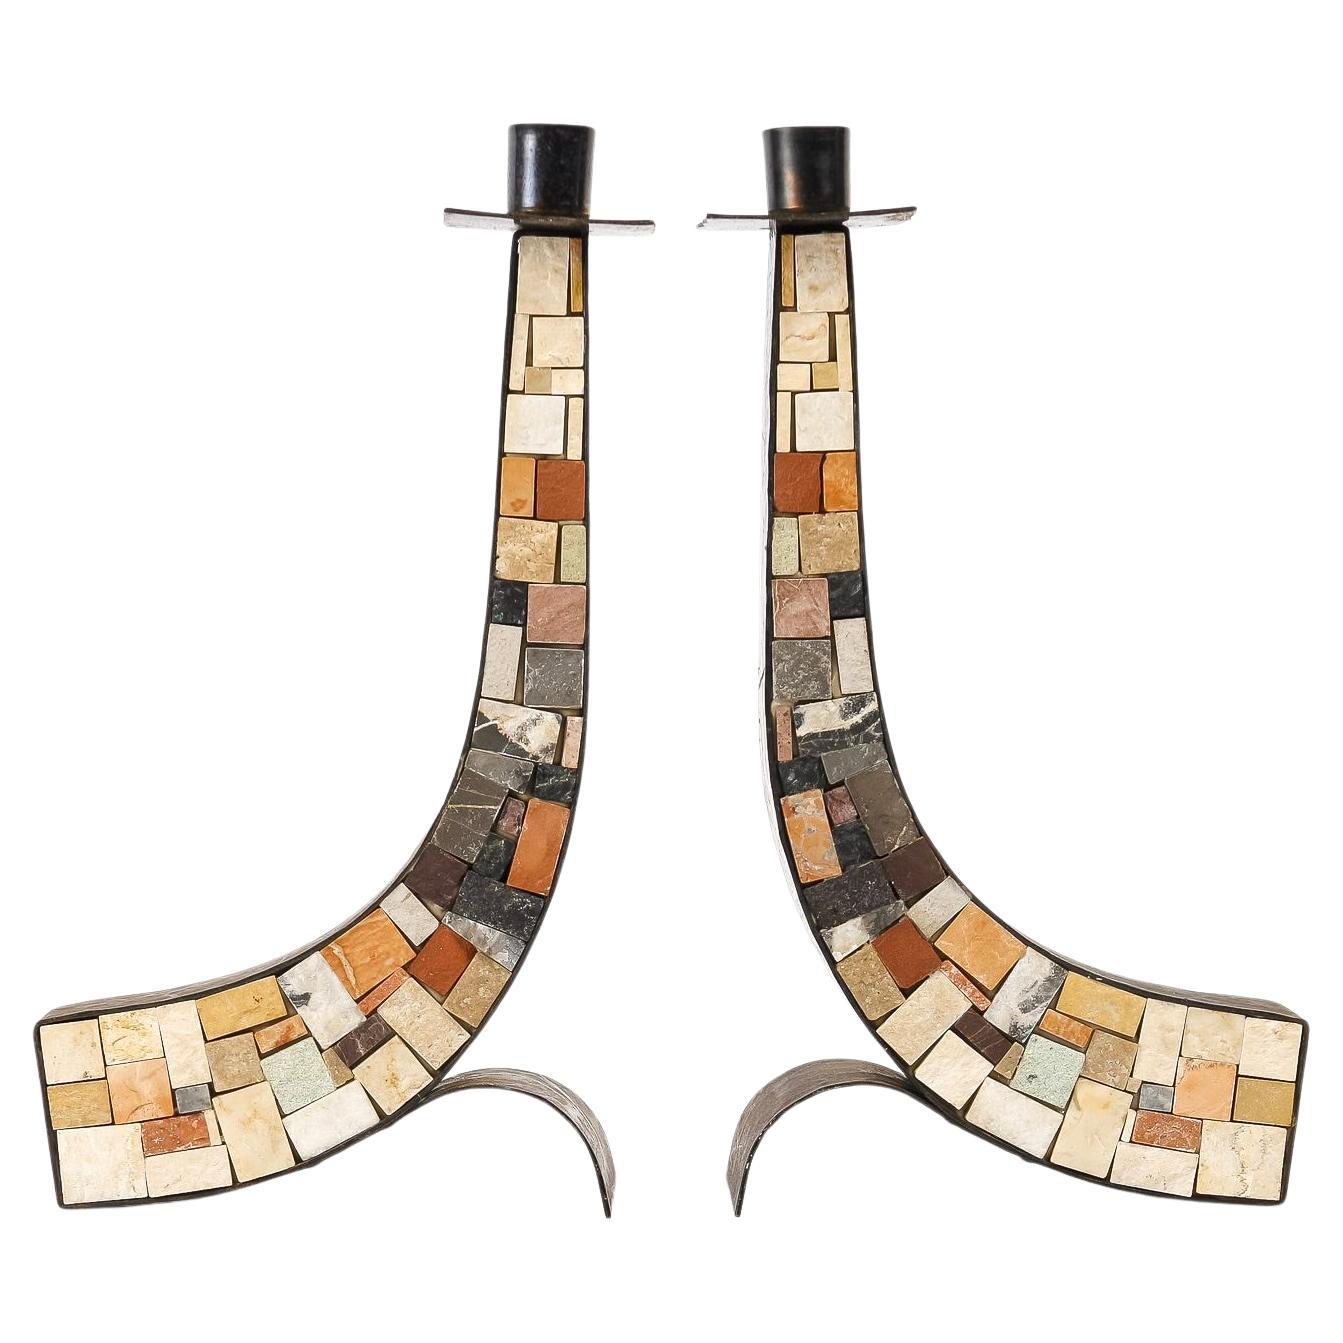 Originales Paar Mosaik-Kerzenhalter, bestehend aus verschiedenfarbigen Steinen, die eine ansteigende Kurve bilden, eingefasst in zwei gehämmerte Kupferplatten, die auf beiden Außenseiten positioniert sind und durch einen Fuß, der eine abgerundete